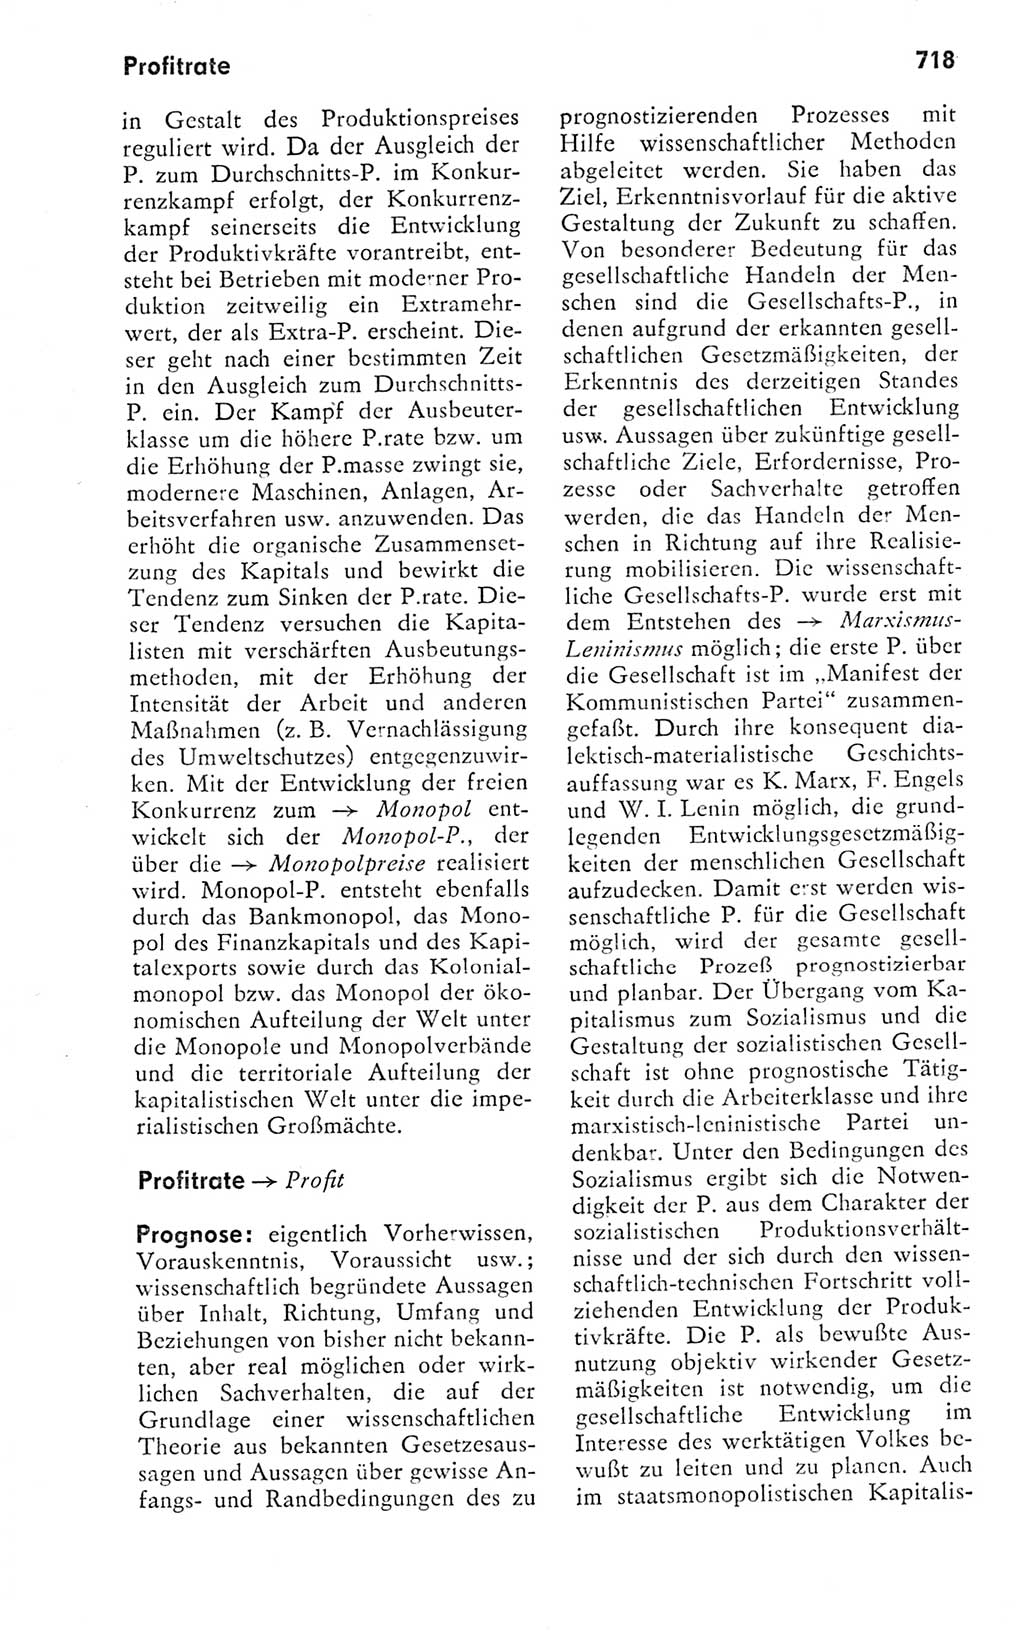 Kleines politisches Wörterbuch [Deutsche Demokratische Republik (DDR)] 1978, Seite 718 (Kl. pol. Wb. DDR 1978, S. 718)